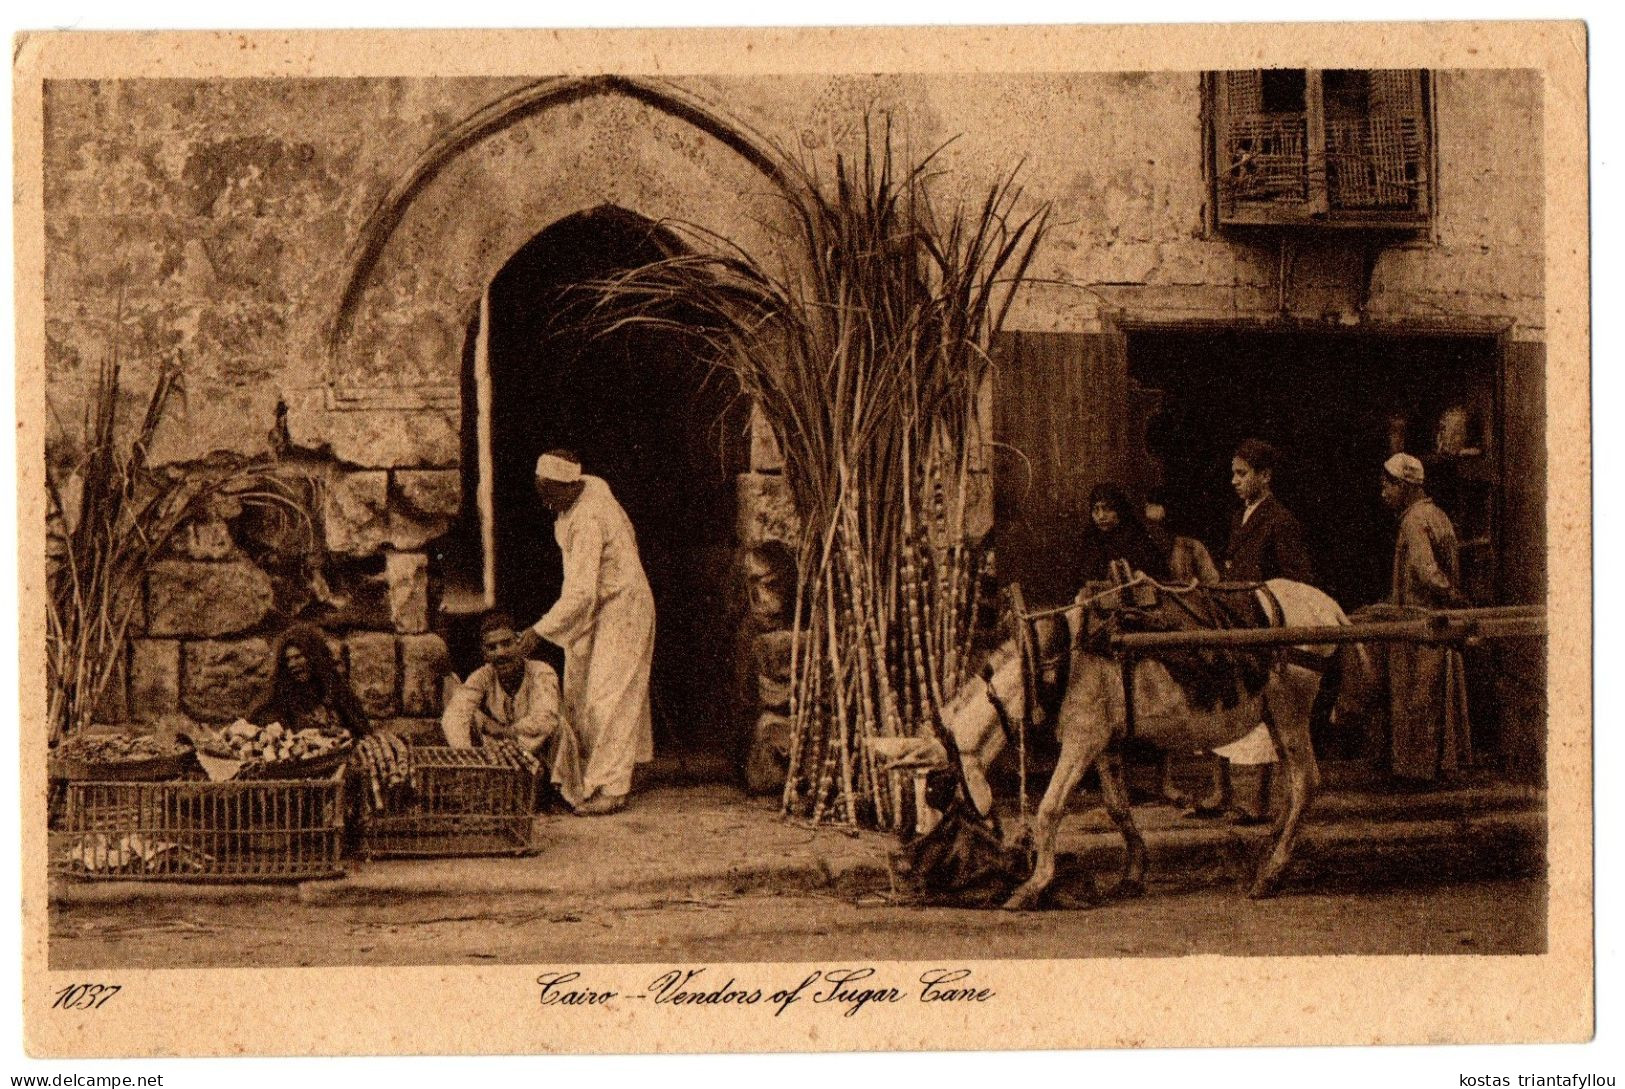 4.1.12 EGYPT, CAIRO, VENDORS OF SUGAR CANE, 1928, POSTCARD - Kairo